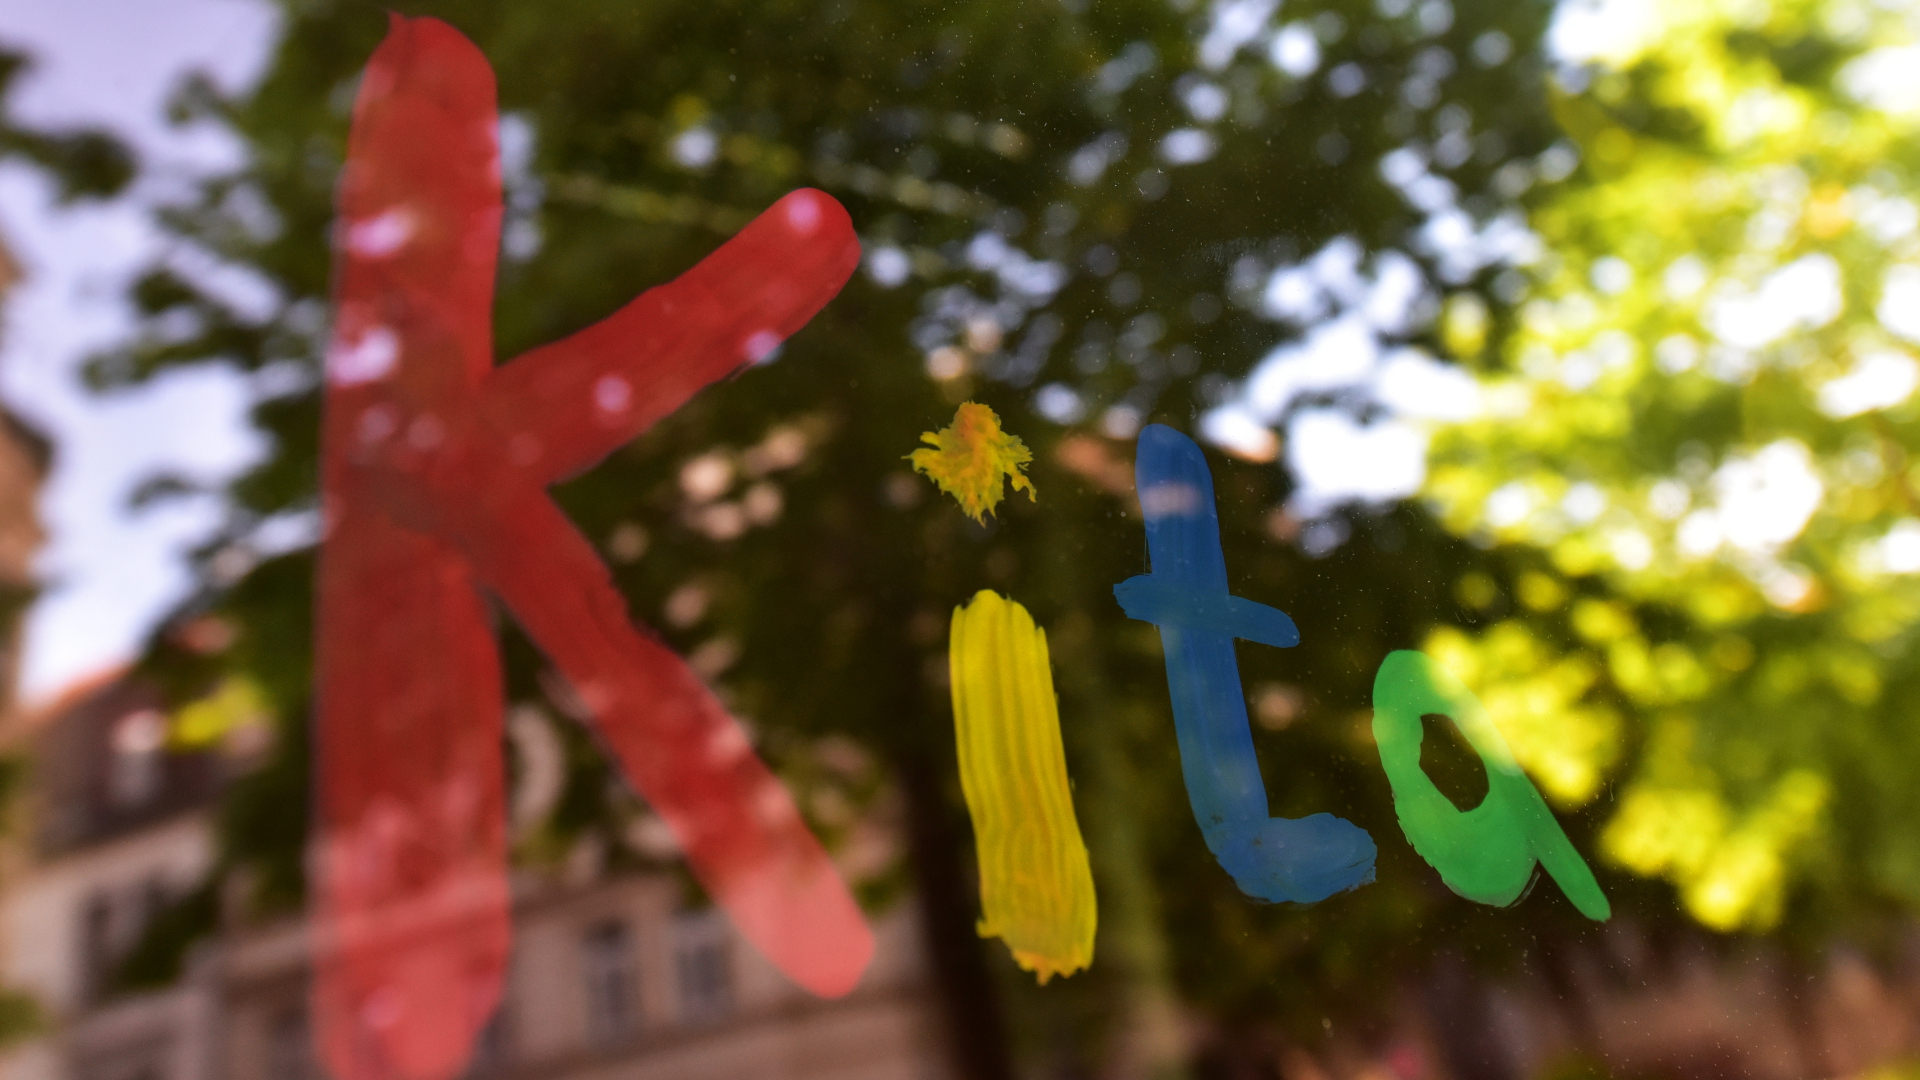 Der bunte Schriftzug "Kita" ist in München mit Fingerfarbe auf die Fensterscheibe einer Kindertagesstätte gemalt (Archivbild) | dpa